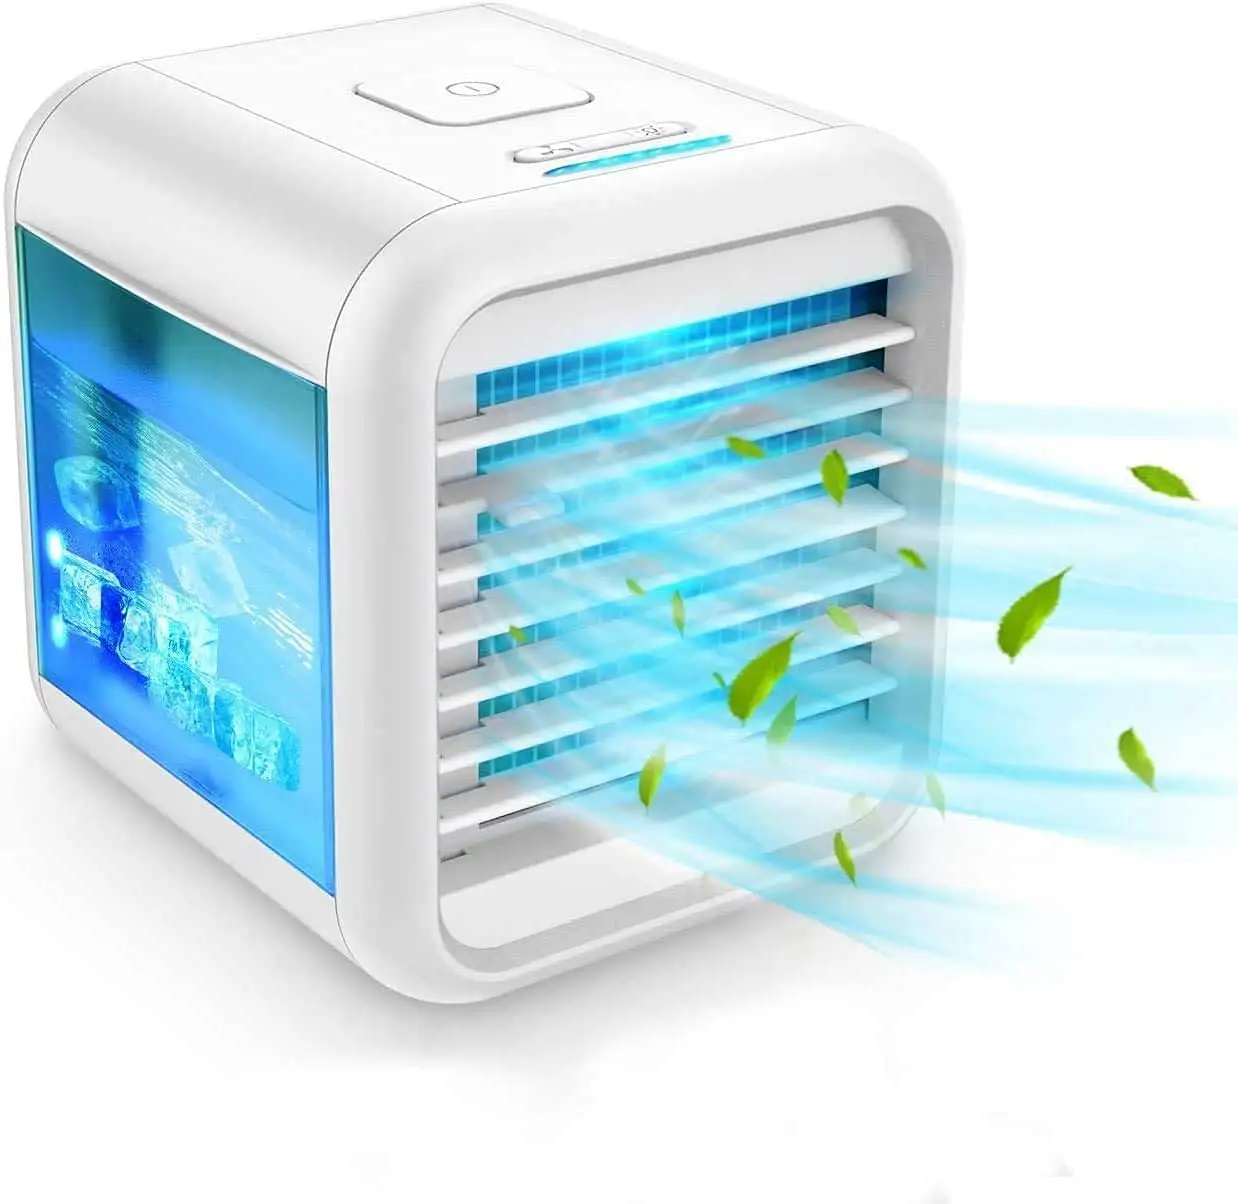 2022 nuovo prodotto ventilatore professionale del condizionatore d'aria di alta qualità condizionatore d'aria portatile Mini USB ventilatore di raffreddamento dell'aria ricaricabile